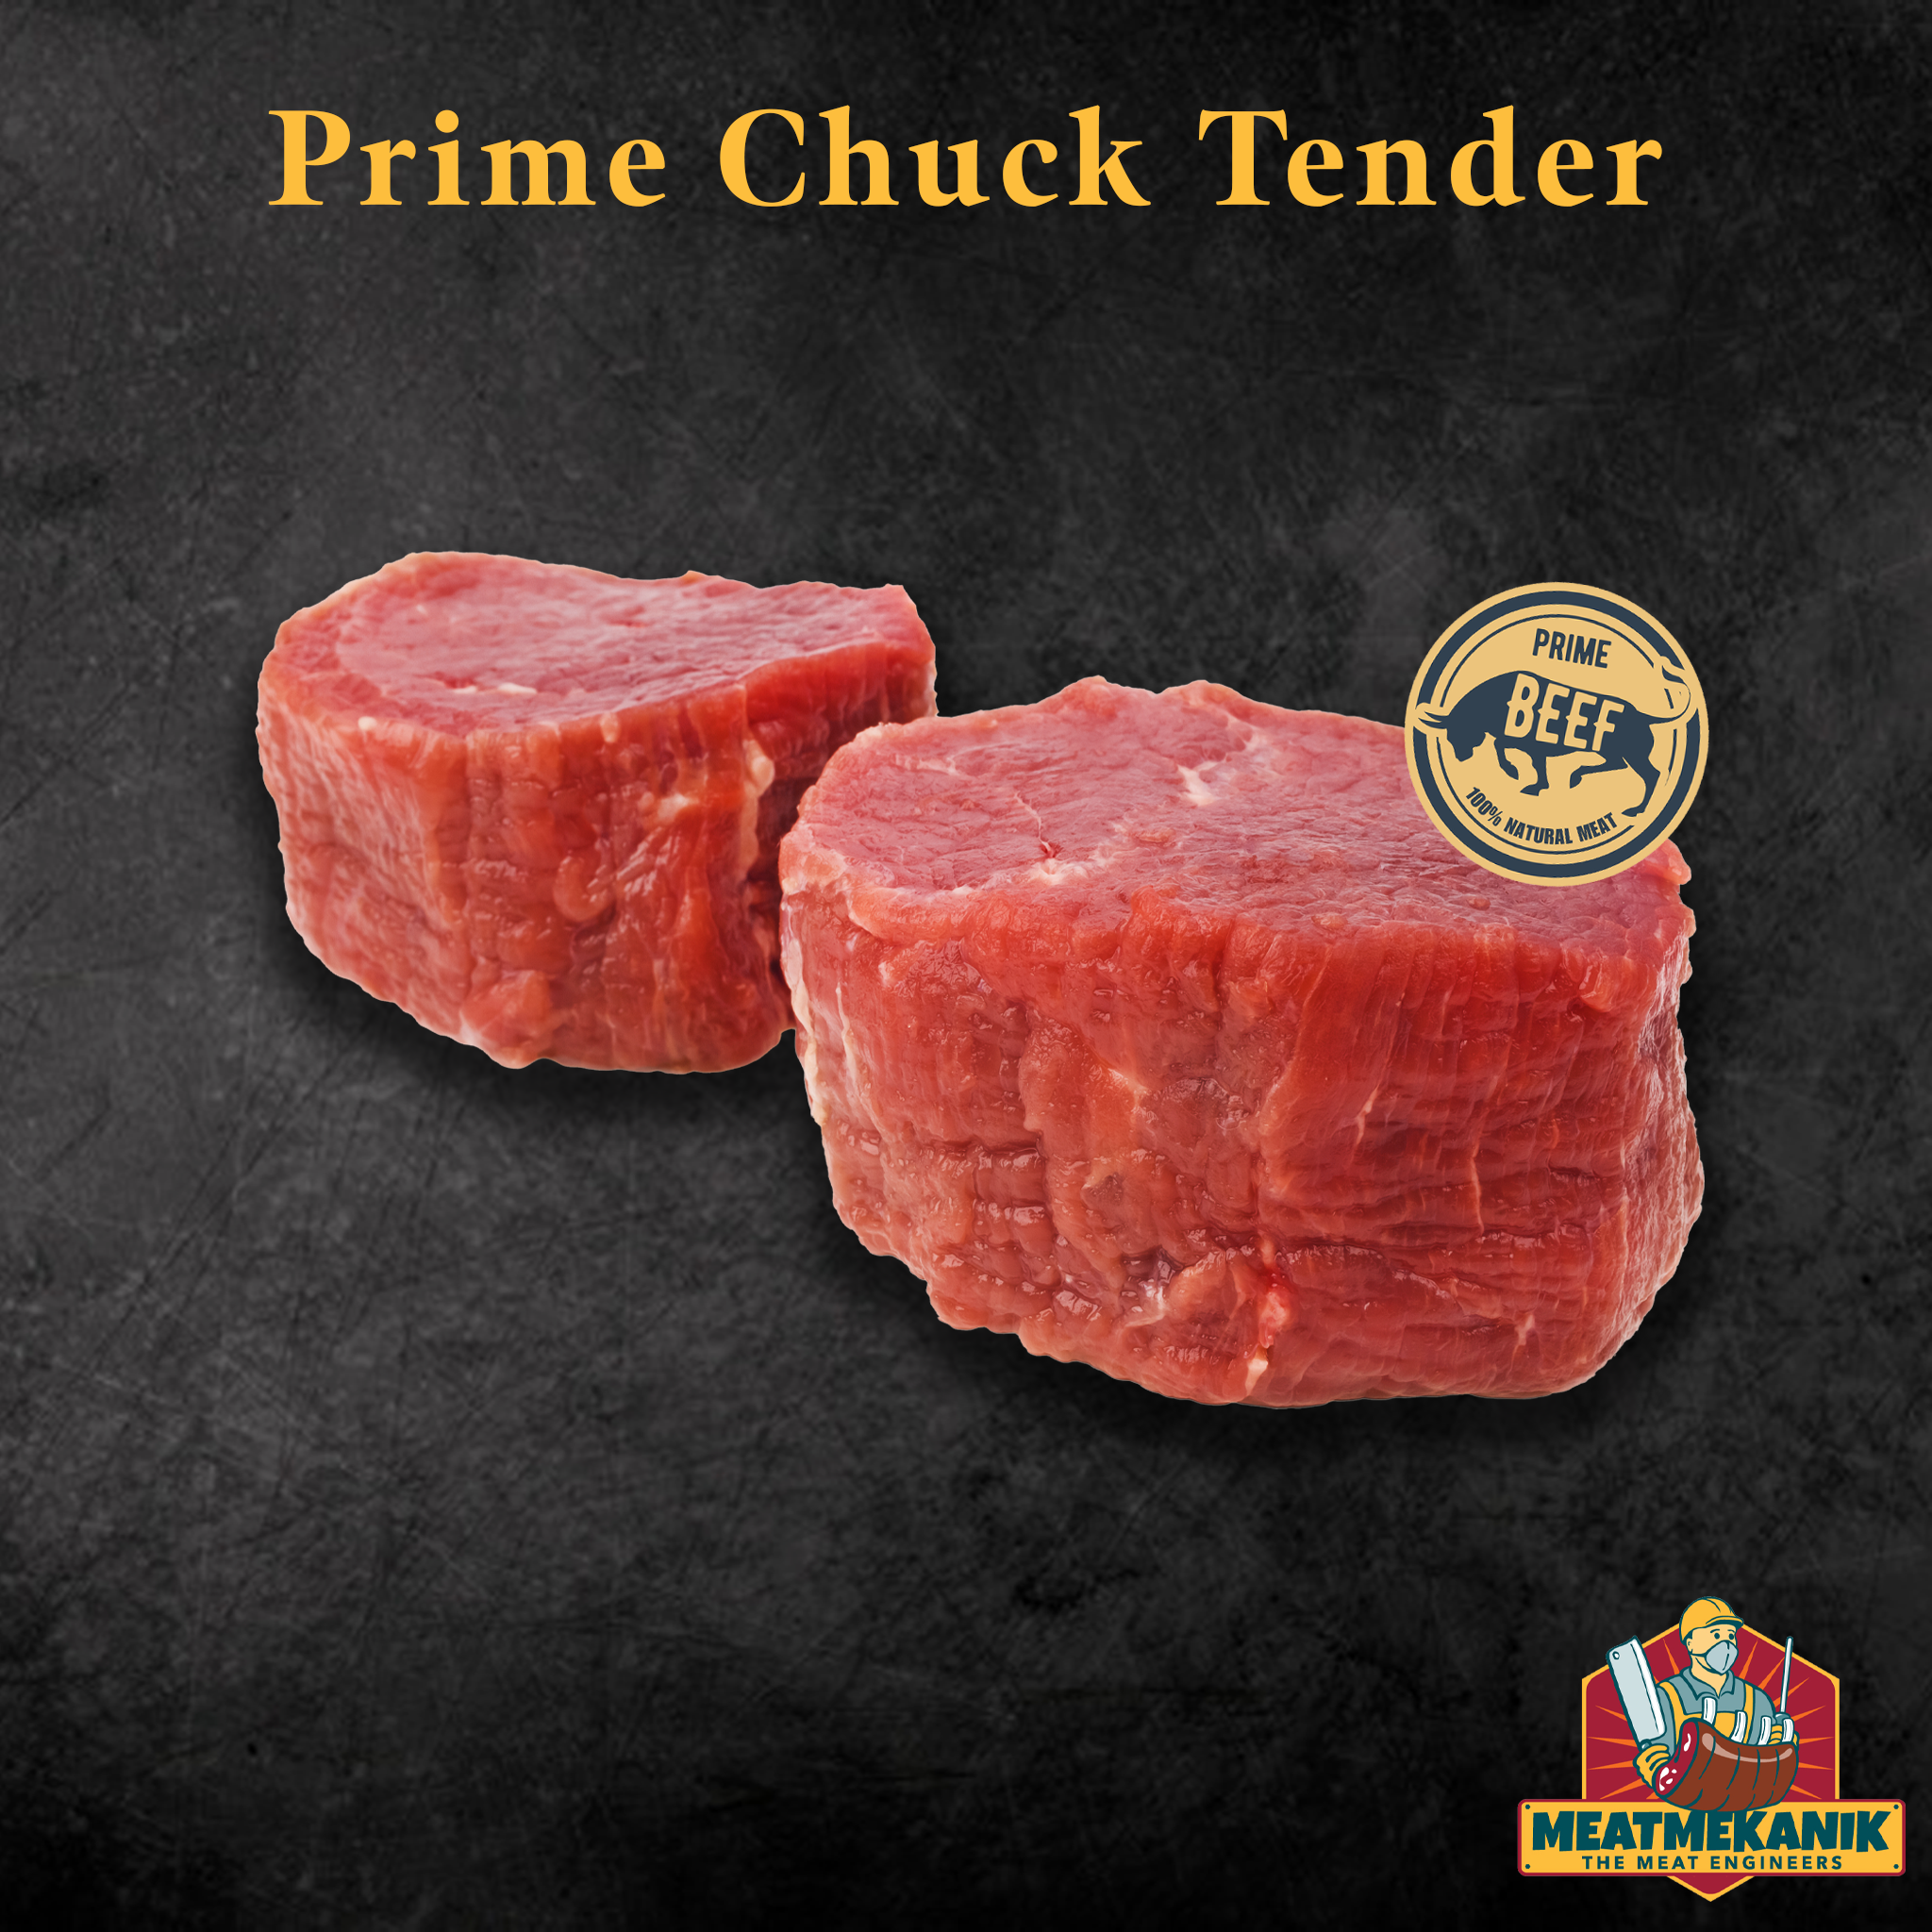 Prime Chuck Tender - Meat Mekanik